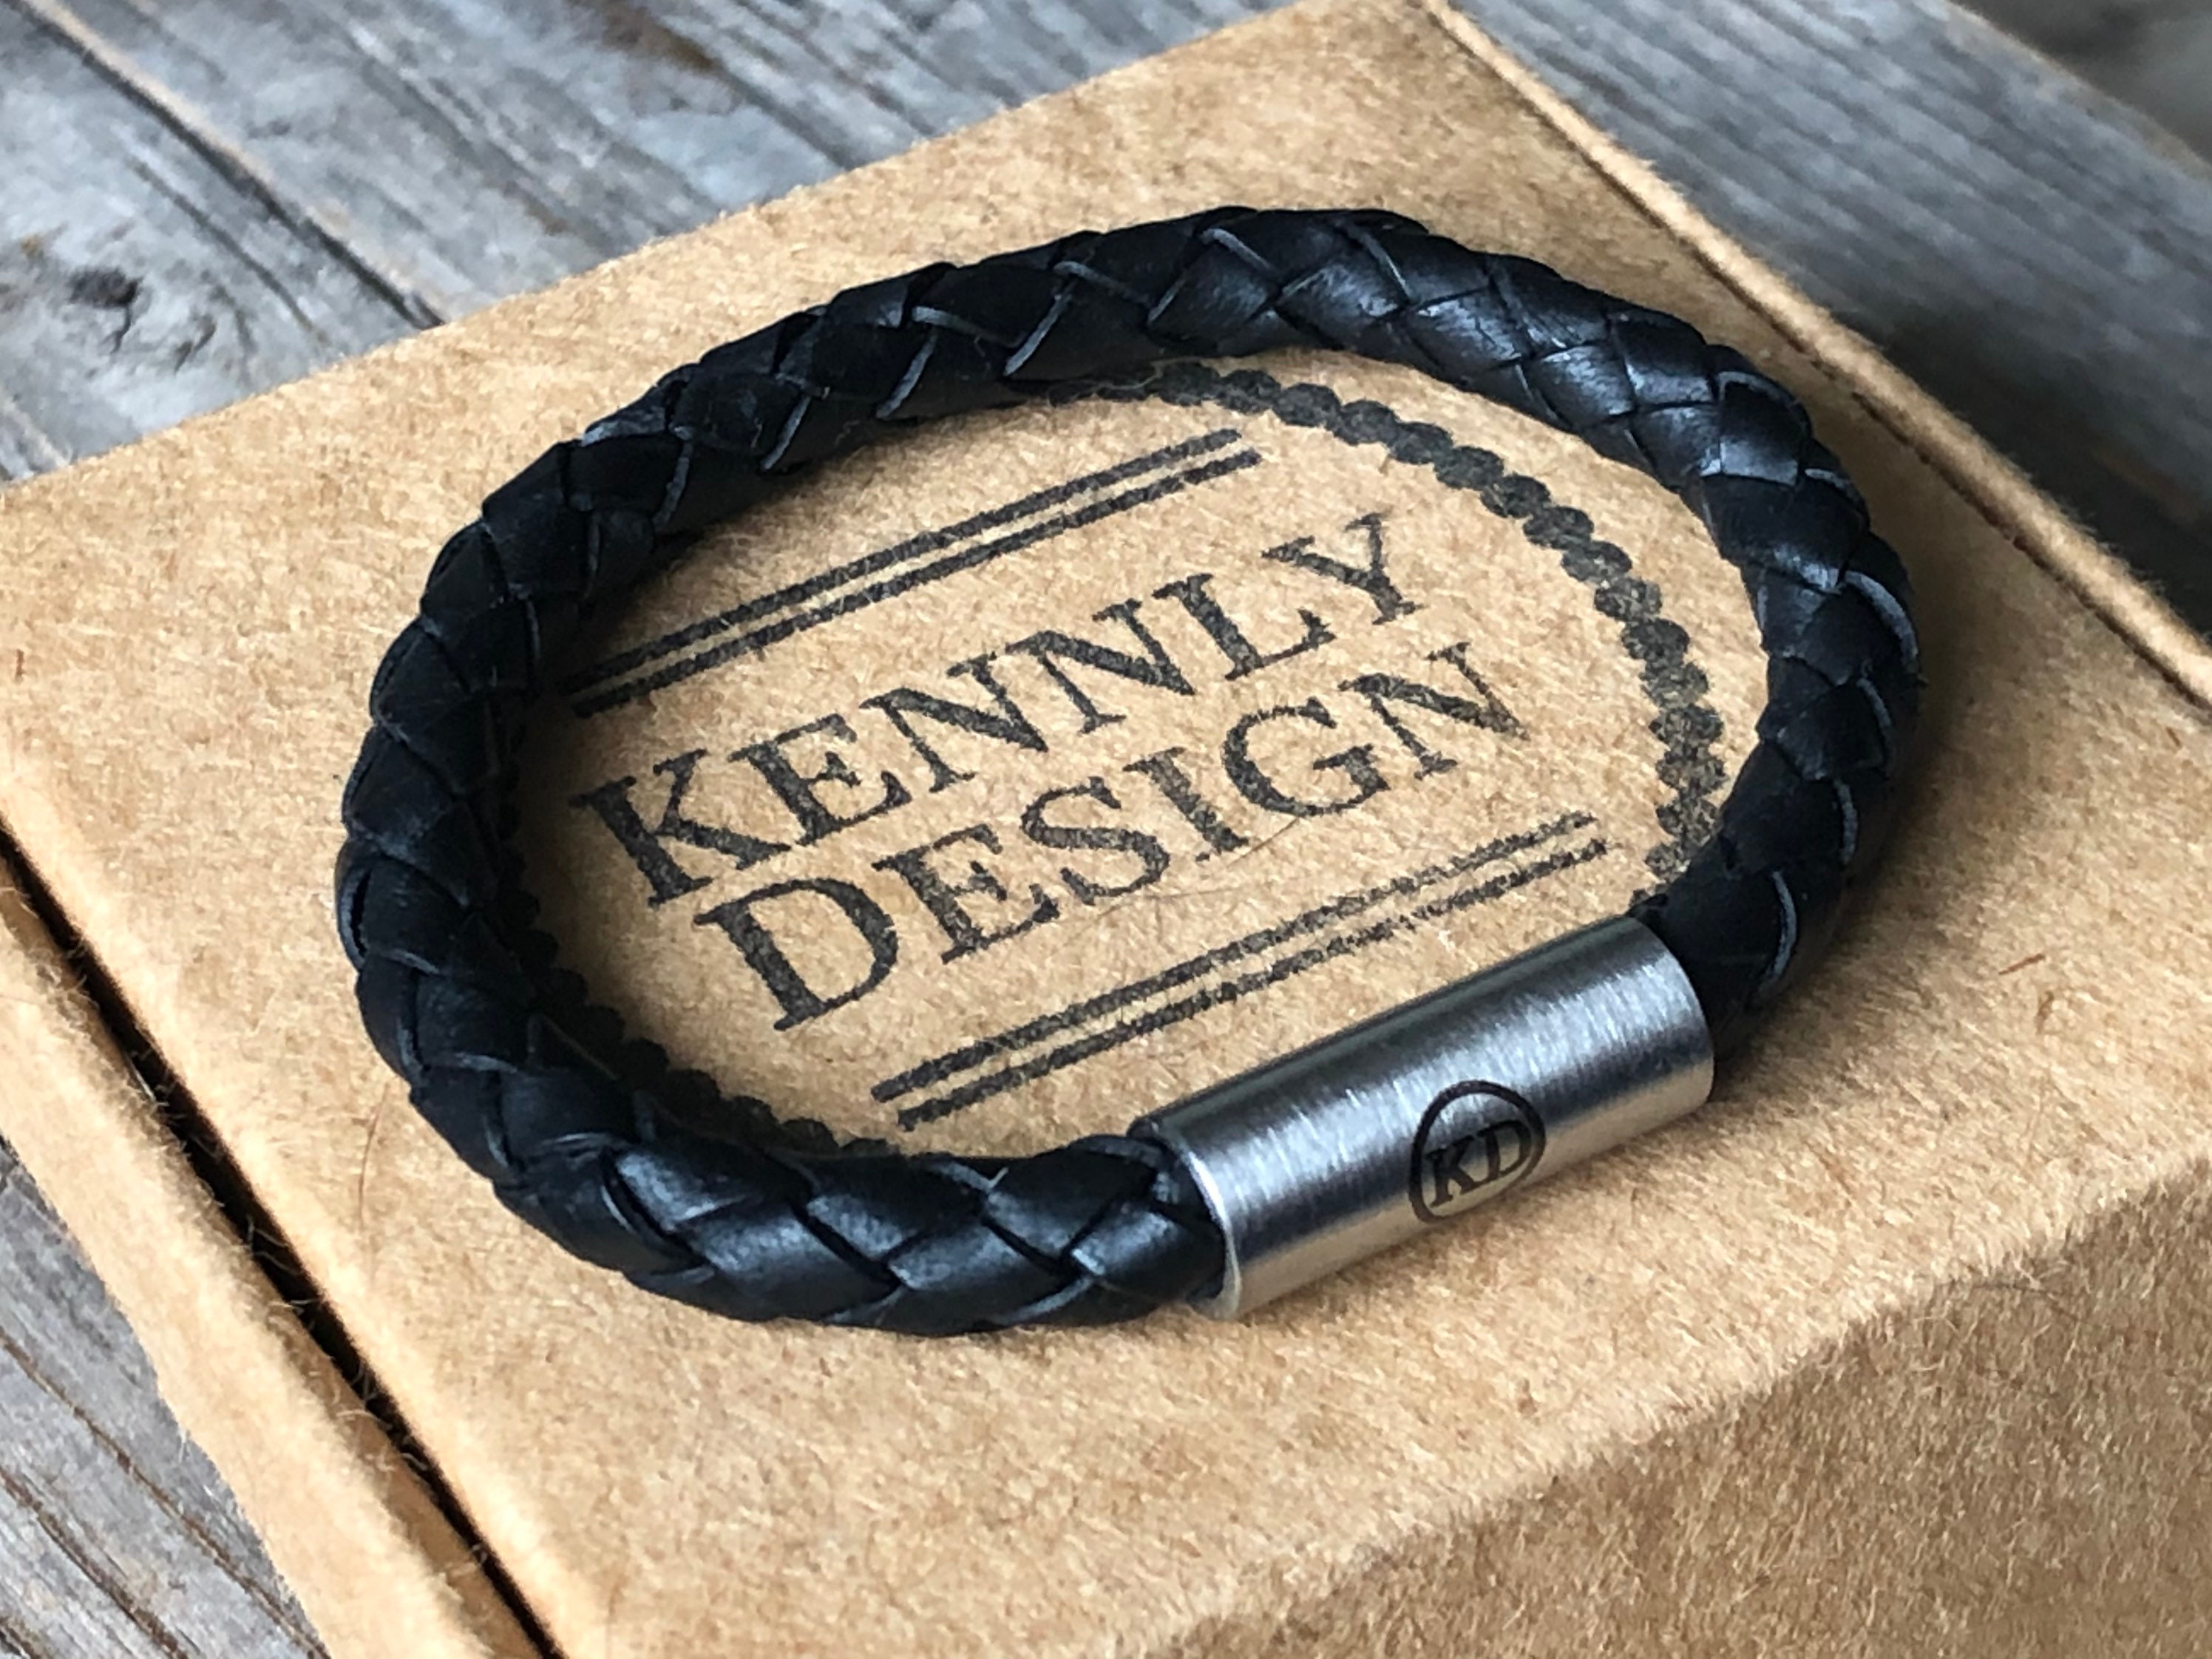 Men's Engraved Braided Leather Bracelet